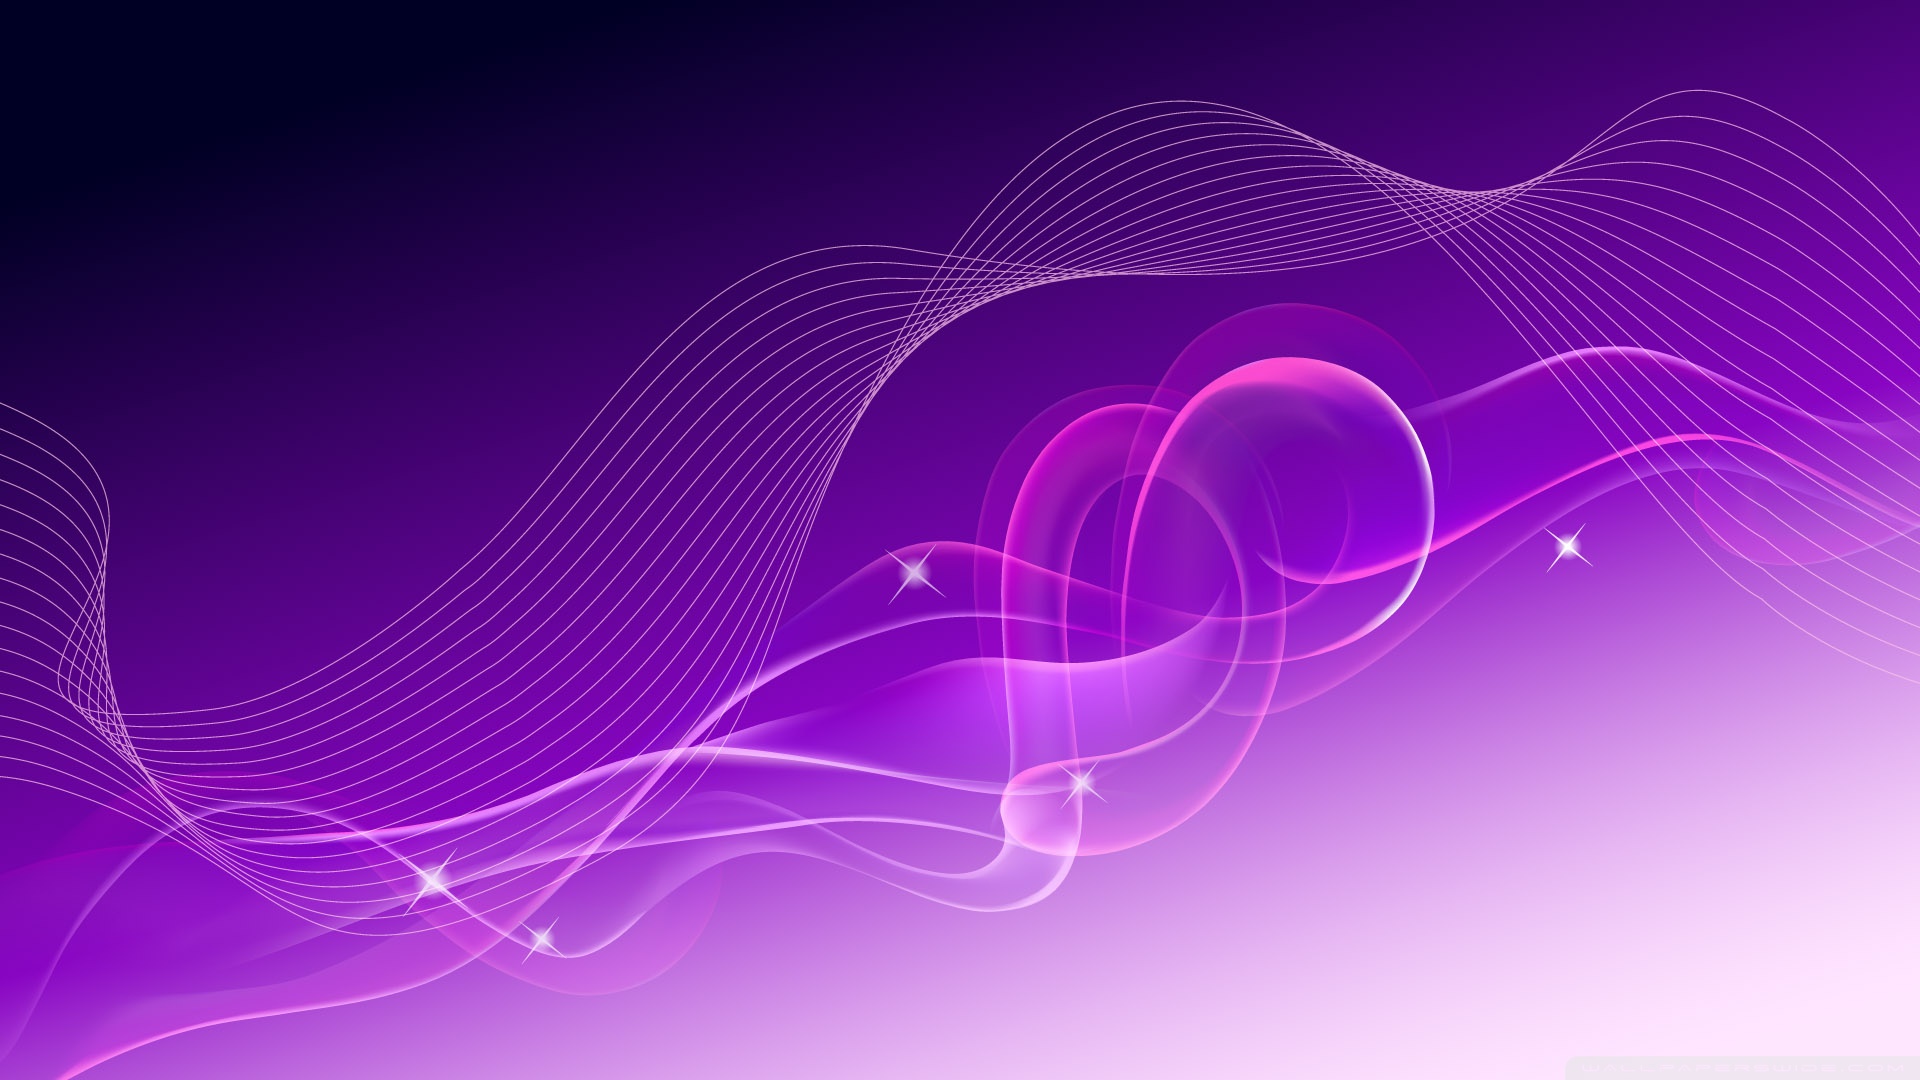 Aero Colorful Purple 5 4K HD Desktop Wallpaper For 4K Ultra HD